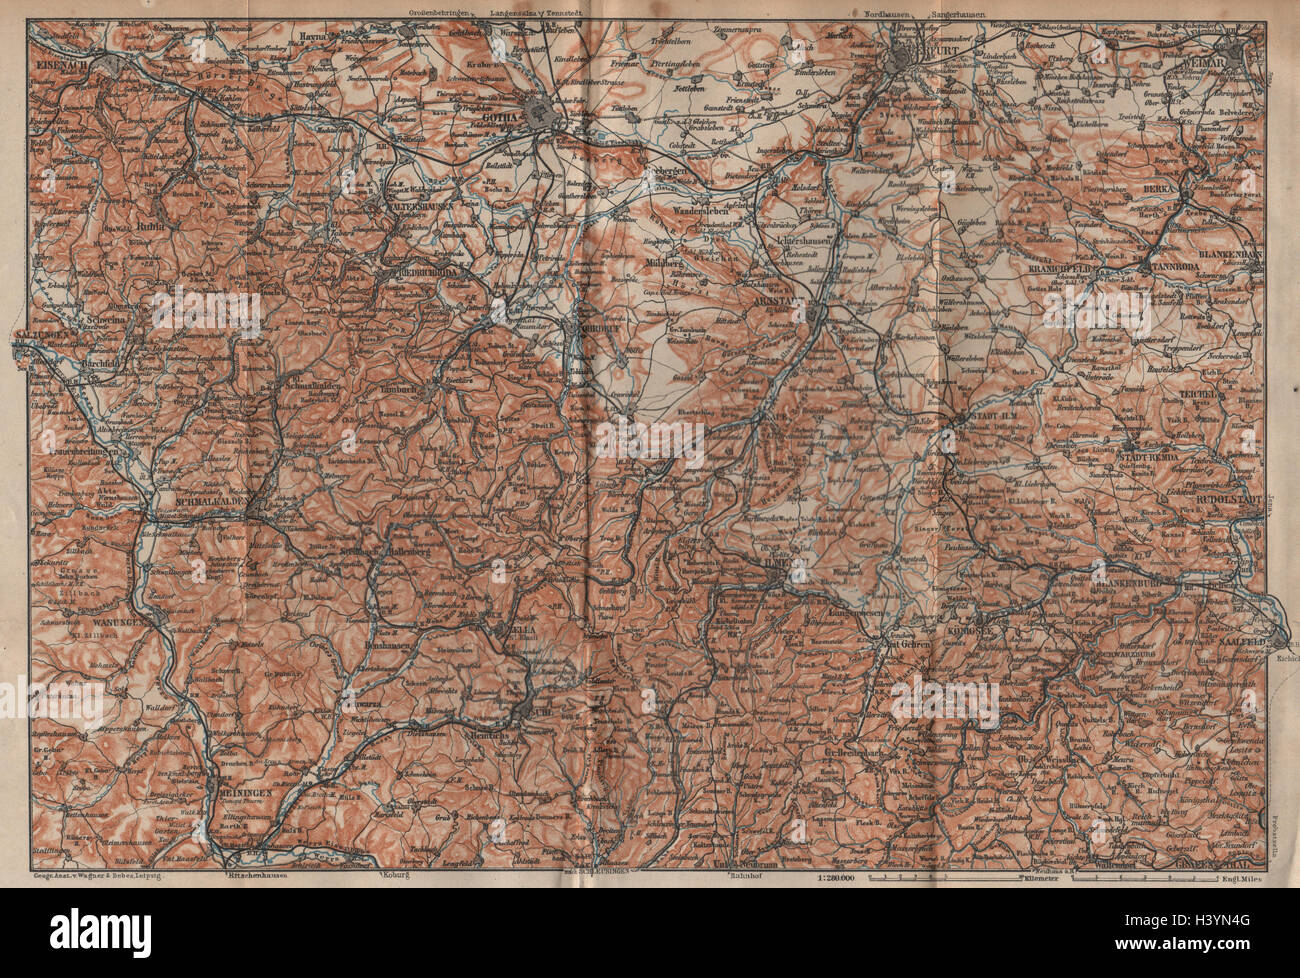 THÜRINGER Wald. Bosque de Turingia. Gotha Eisenach Erfurt Weimar karte 1904 mapa Foto de stock